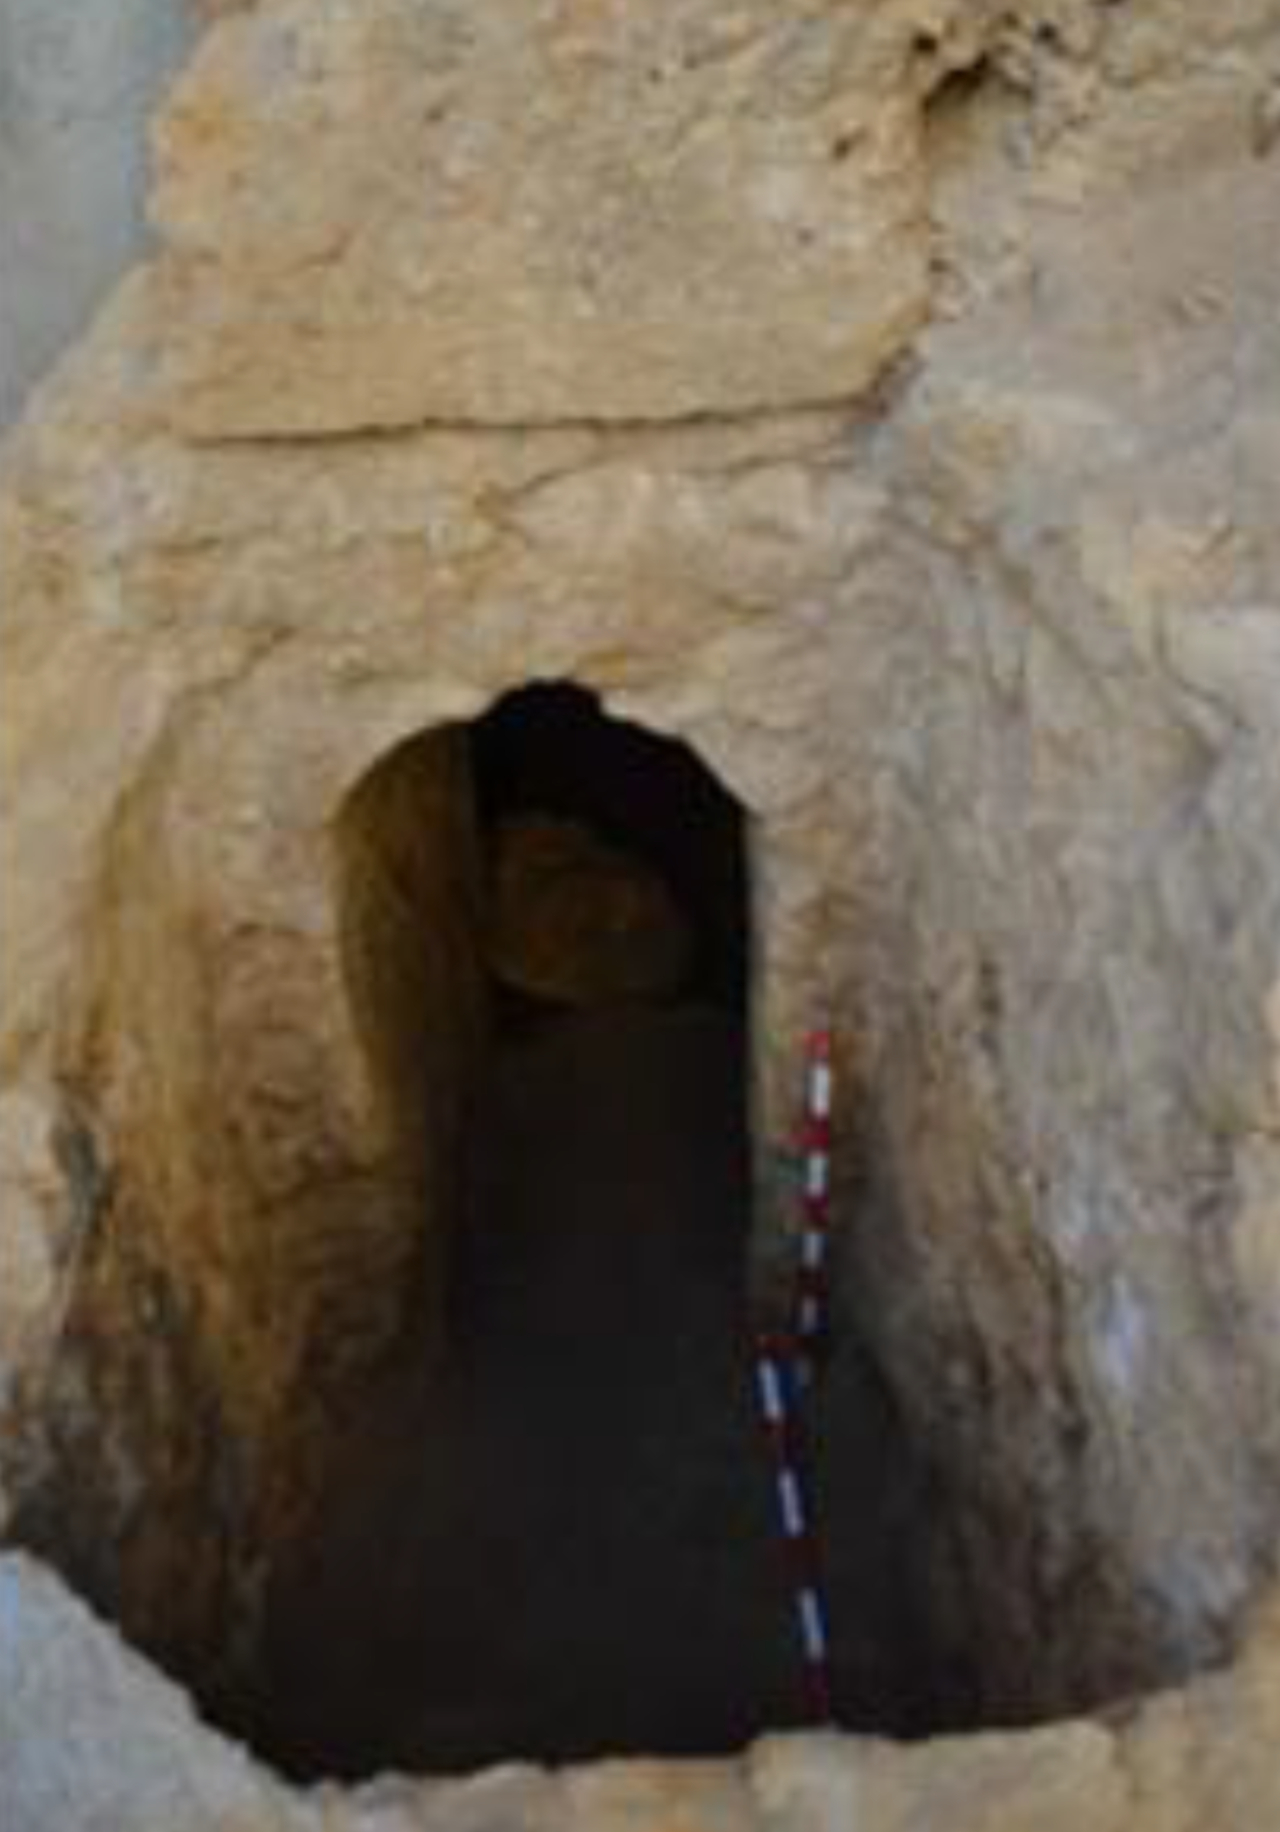 Entrada da tumba onde foi encontrada antiga fragrância romana